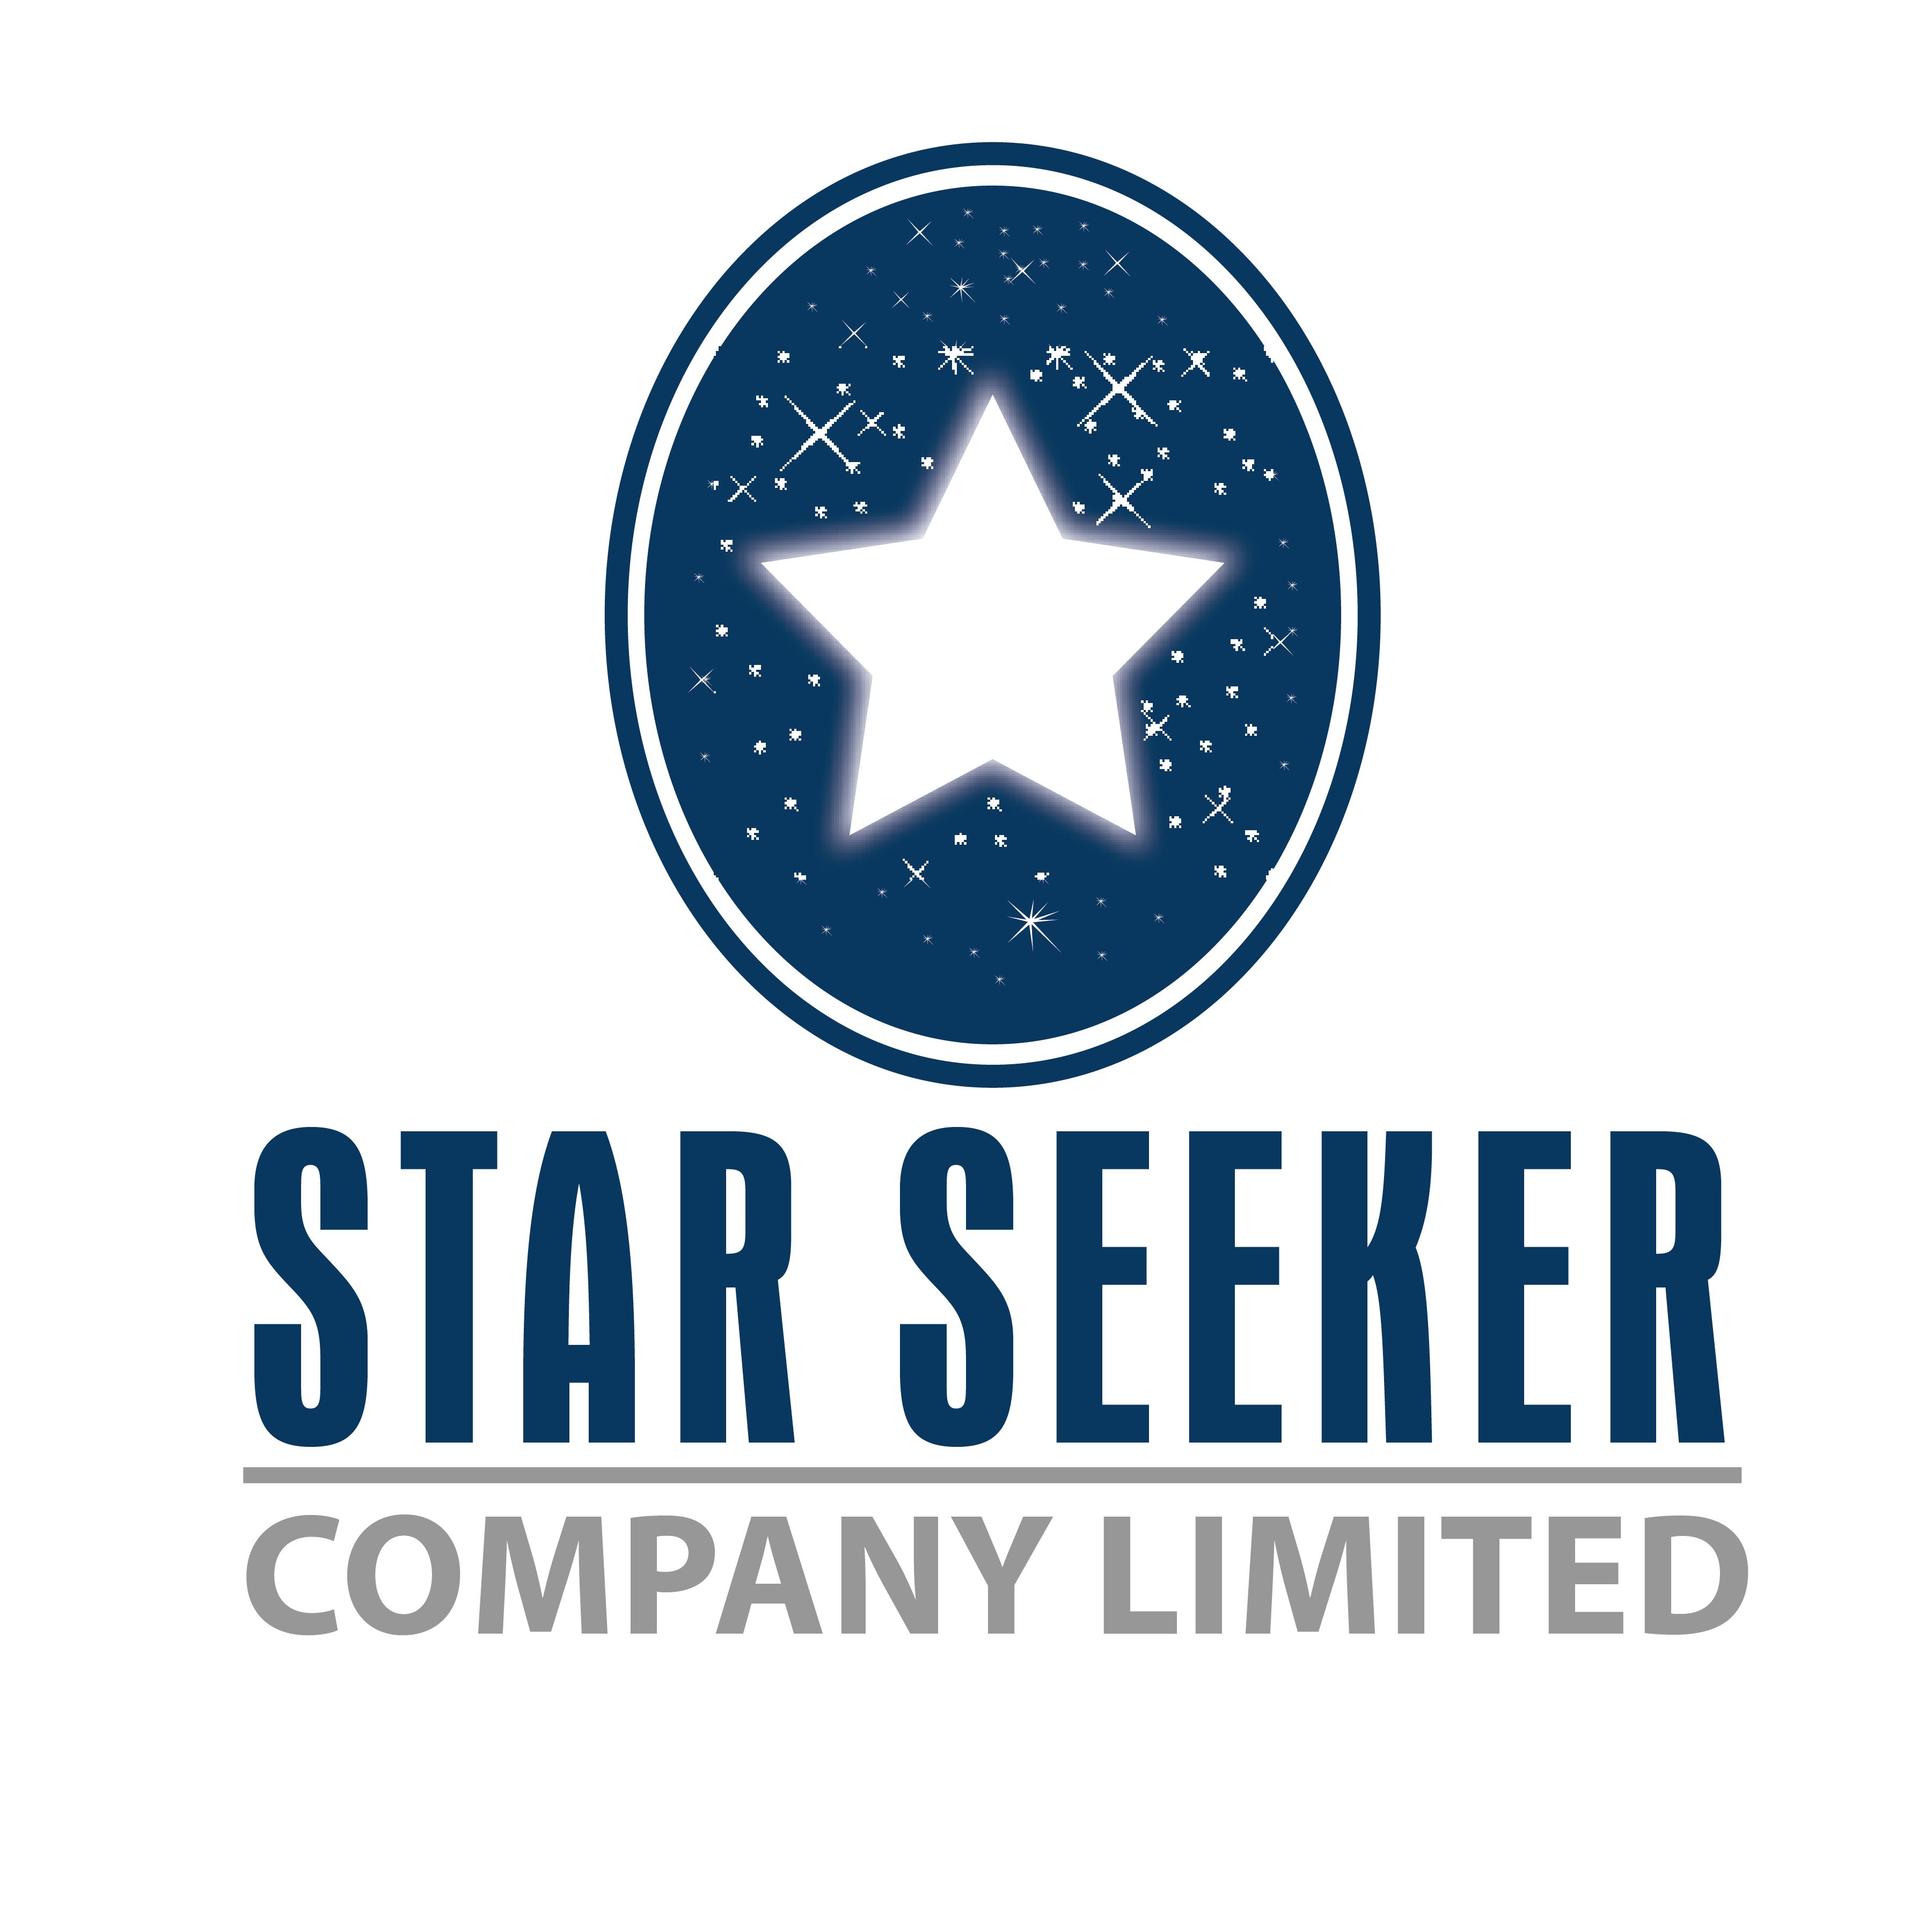 StarSeeker Co., Ltd.